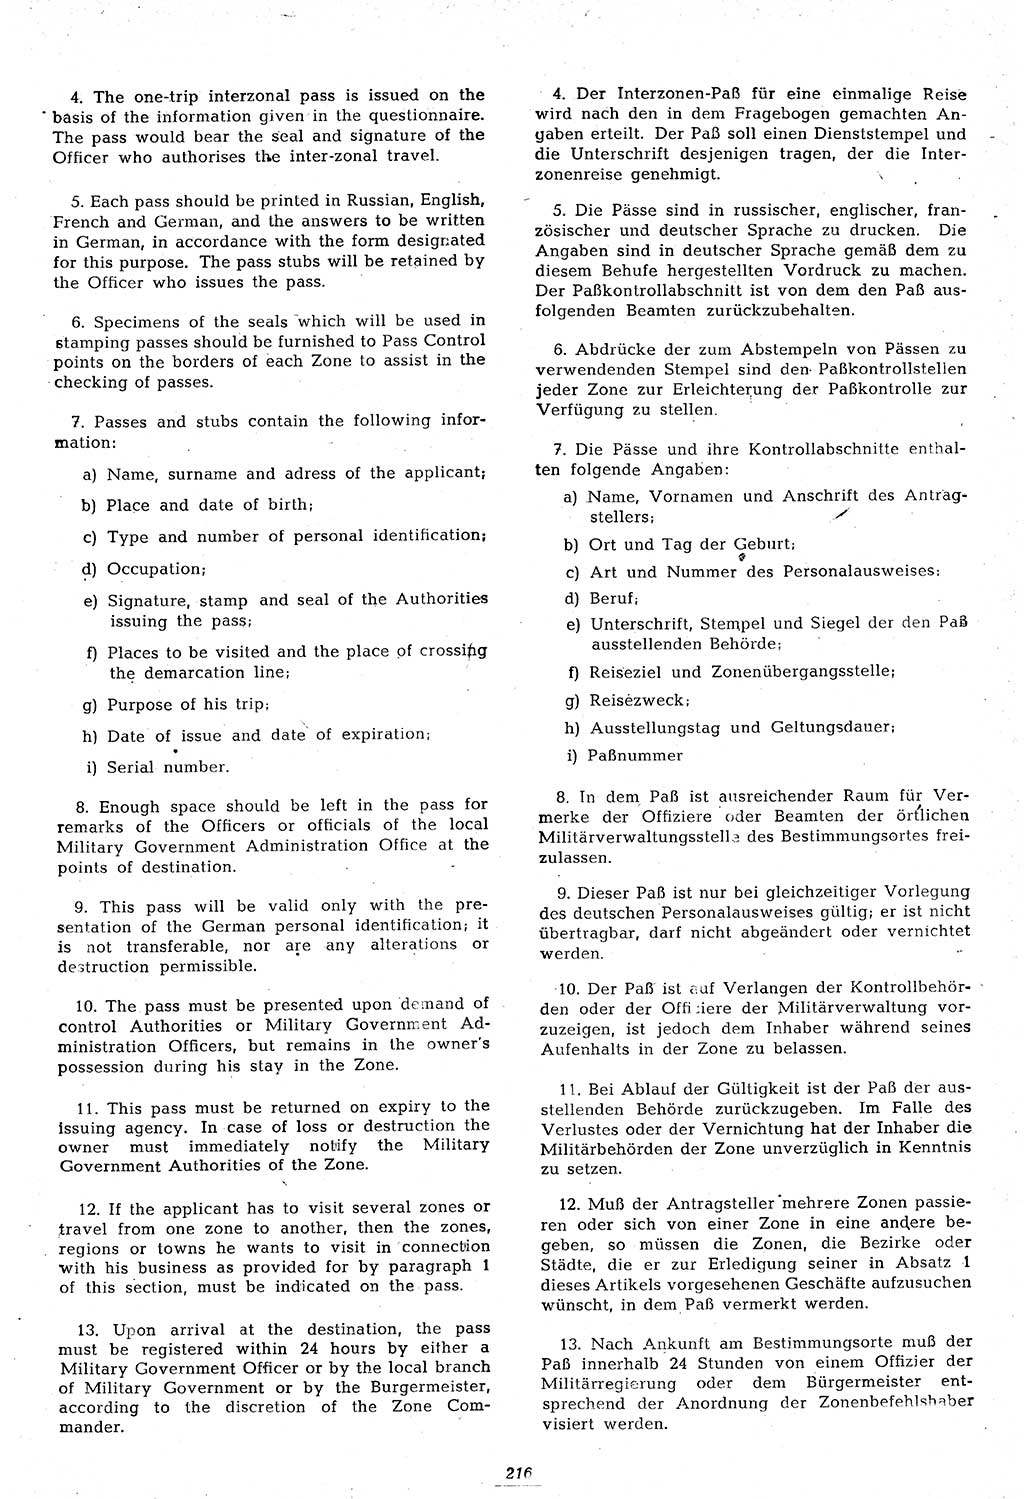 Amtsblatt des Kontrollrats (ABlKR) in Deutschland 1946, Seite 216/2 (ABlKR Dtl. 1946, S. 216/2)